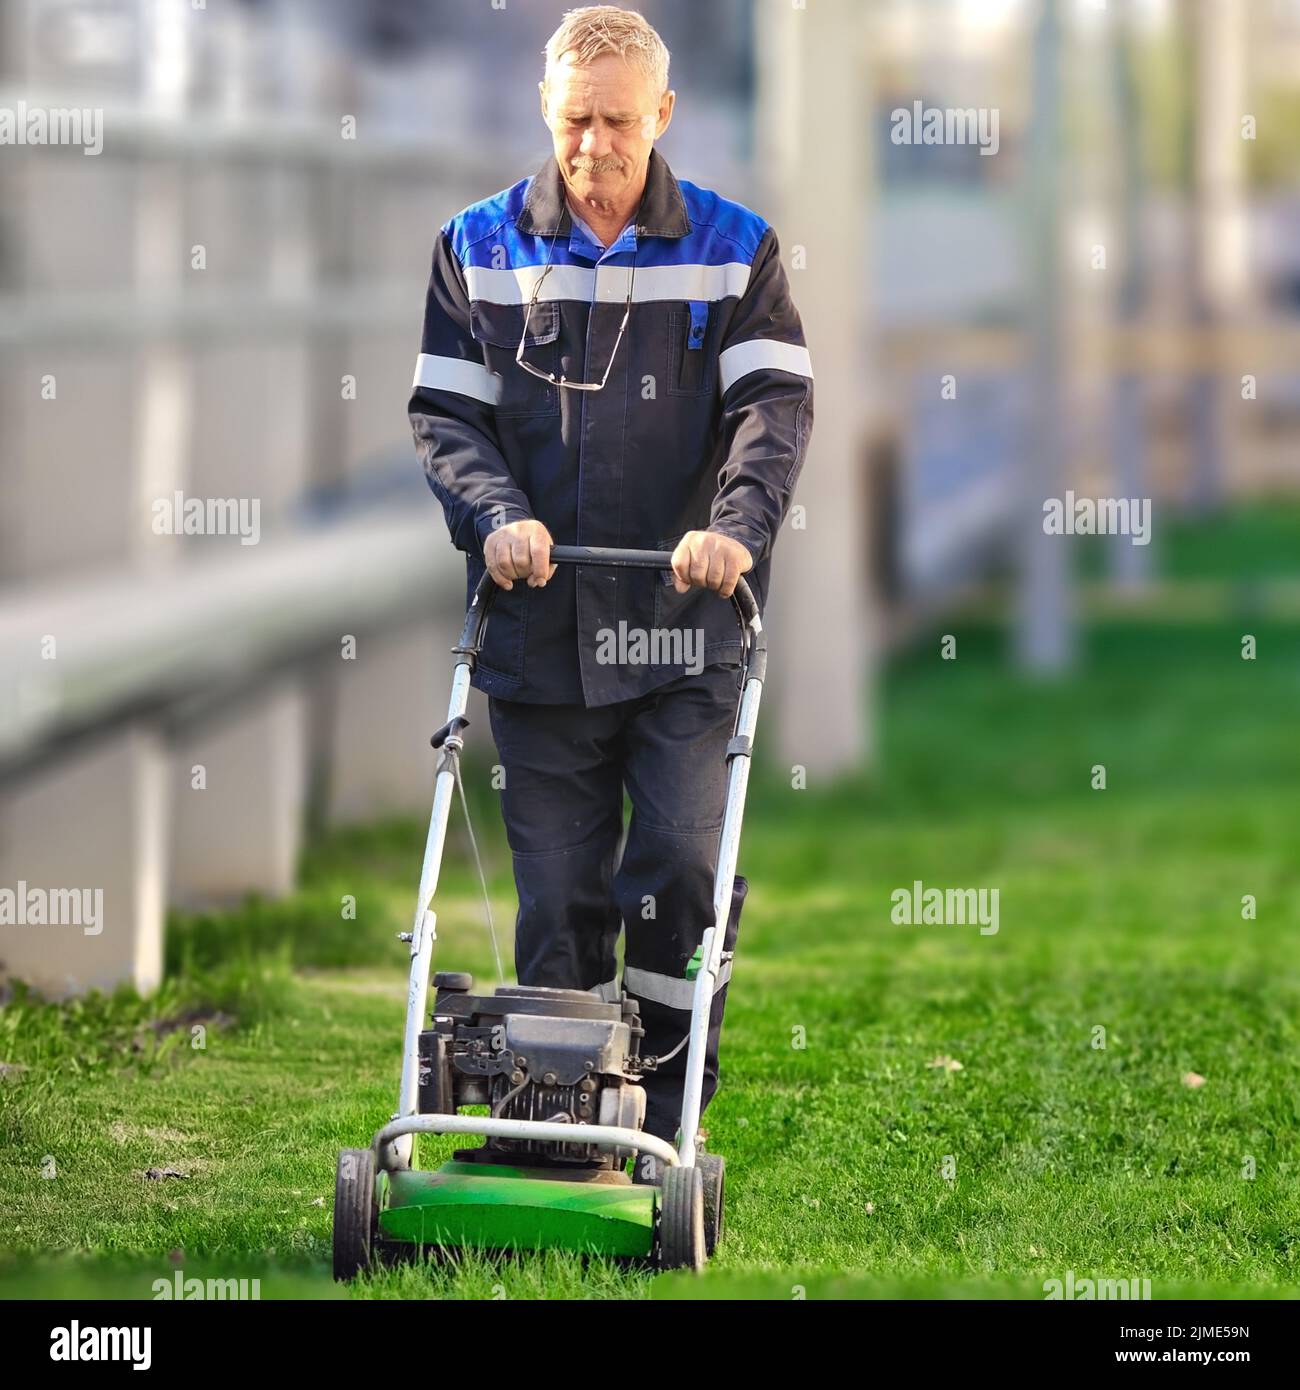 Ein älterer Arbeiter mäht an einem sonnigen Tag den Rasen. Ein Mann mit Arbeitskleidung arbeitet mit einem Rasenmäher auf einer grünen Wiese. Stockfoto